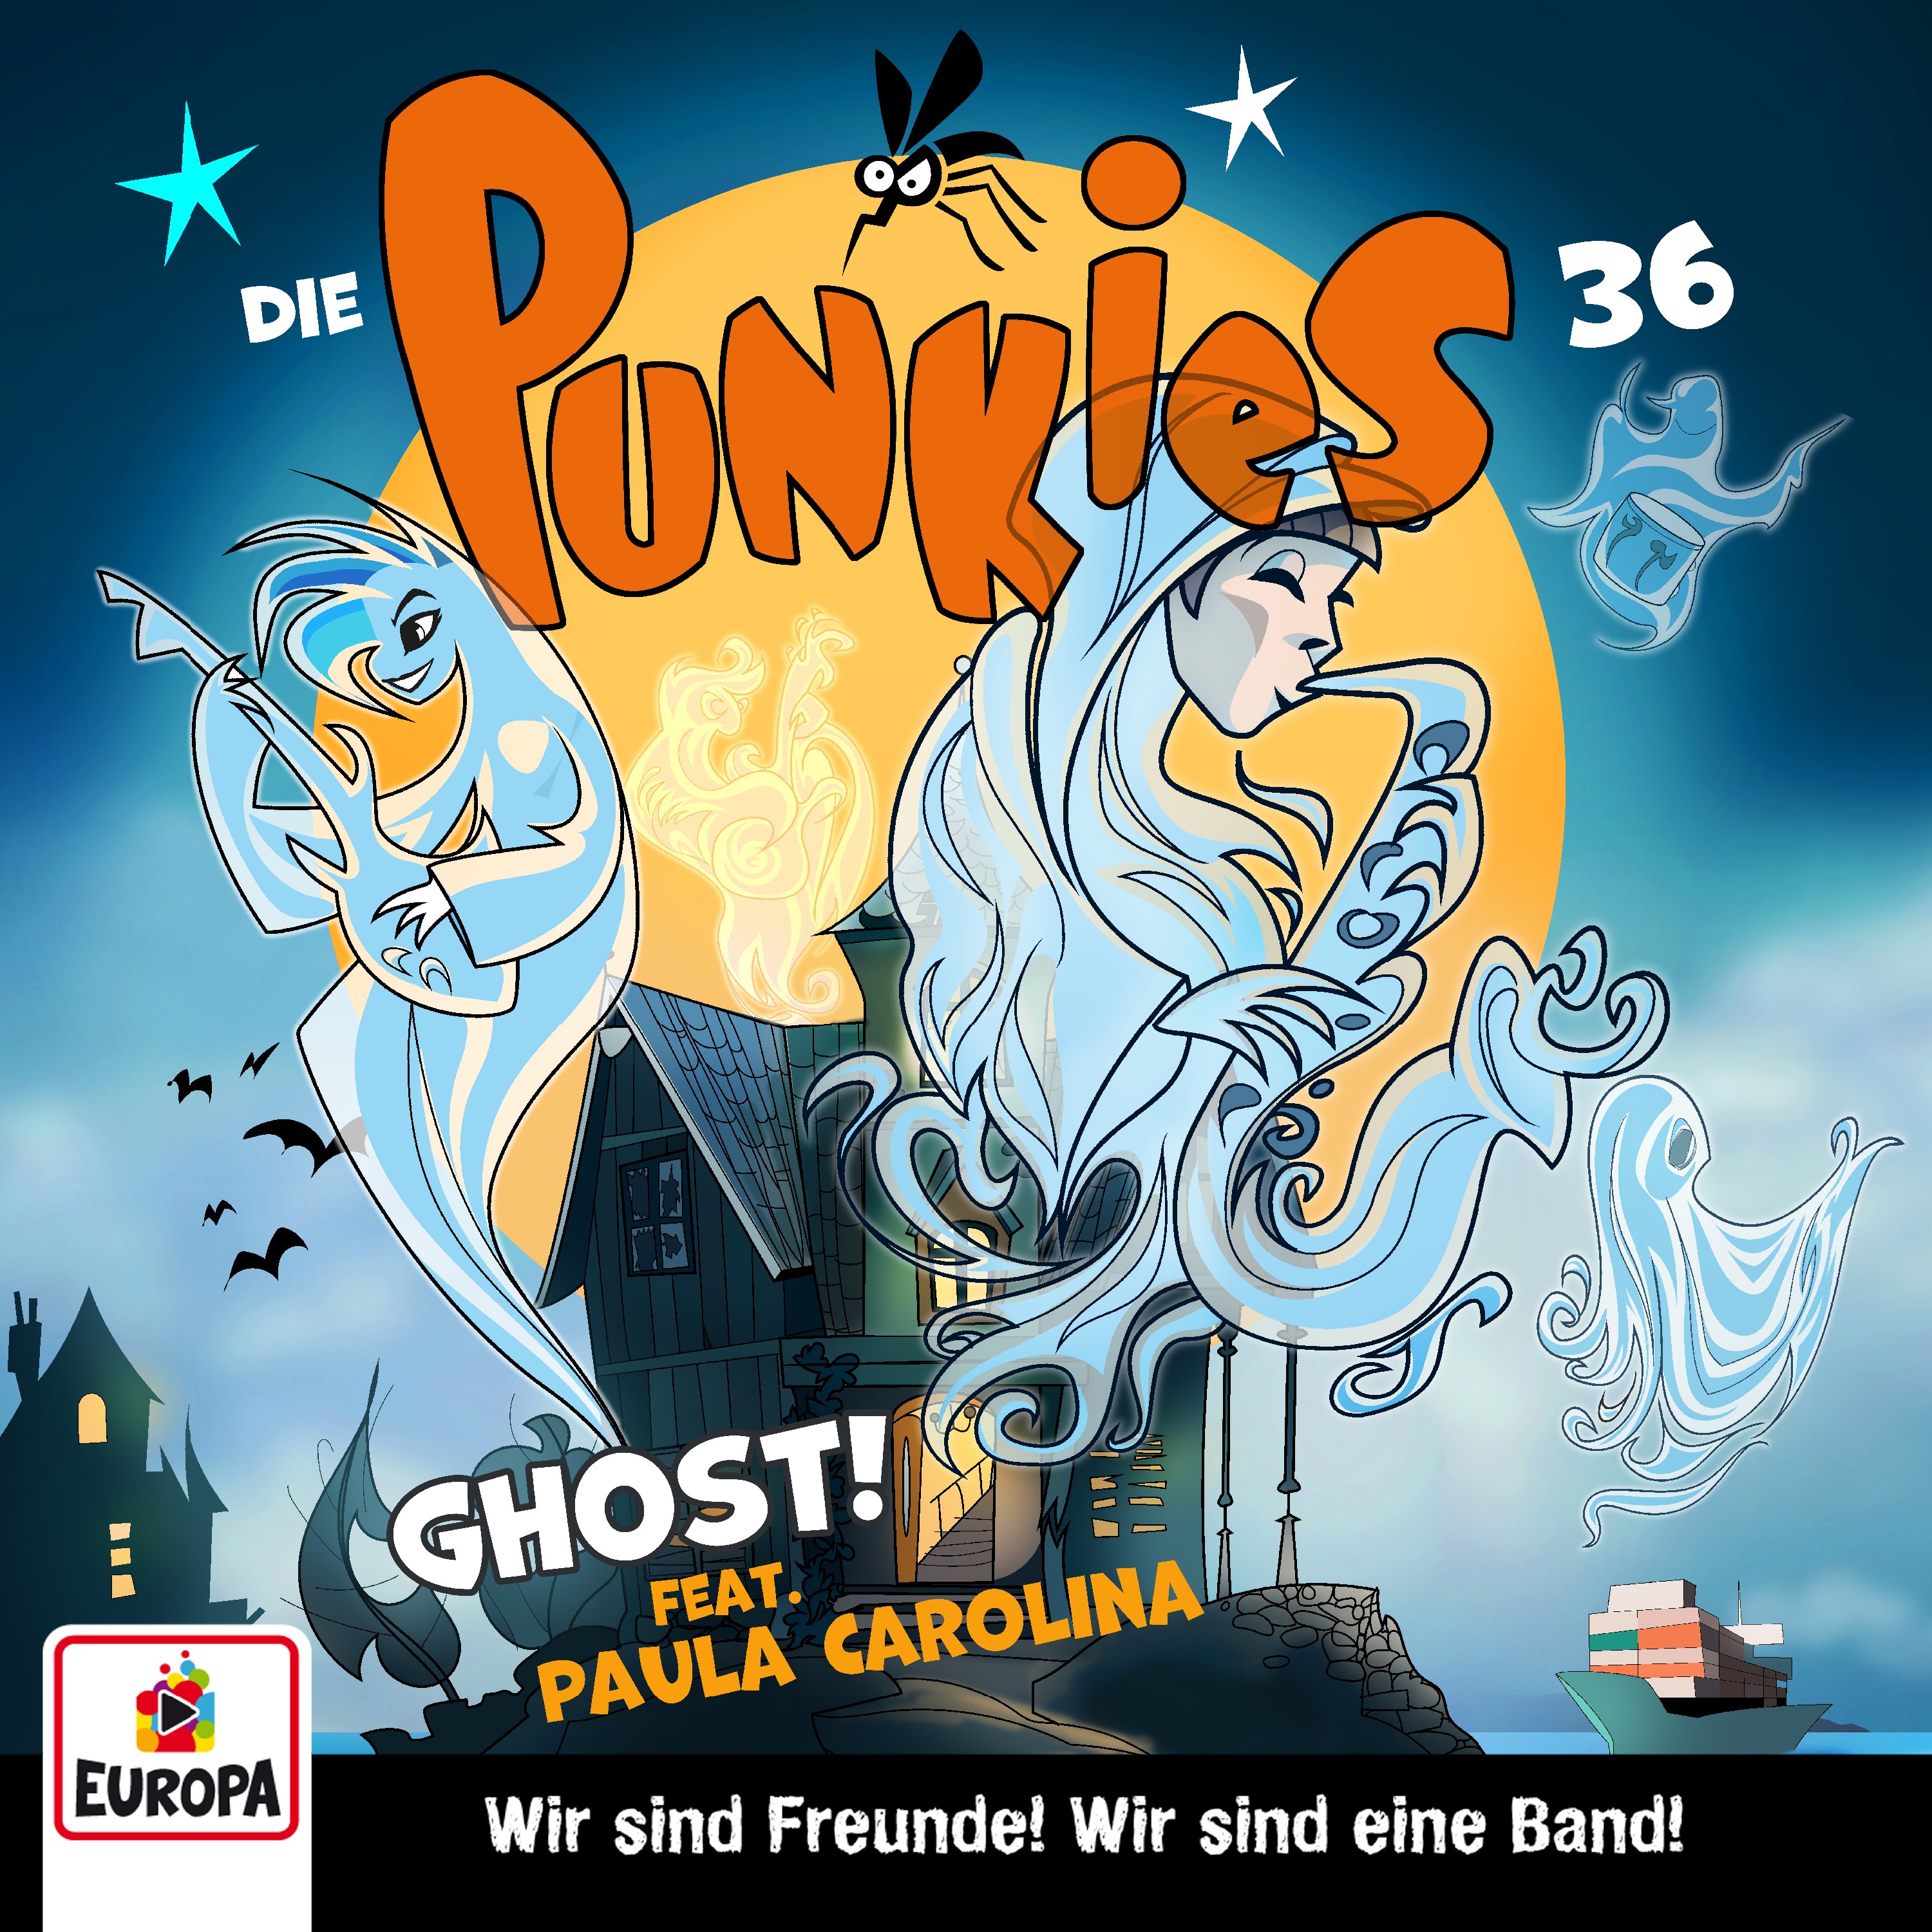 Die Punkies : Ghost! 